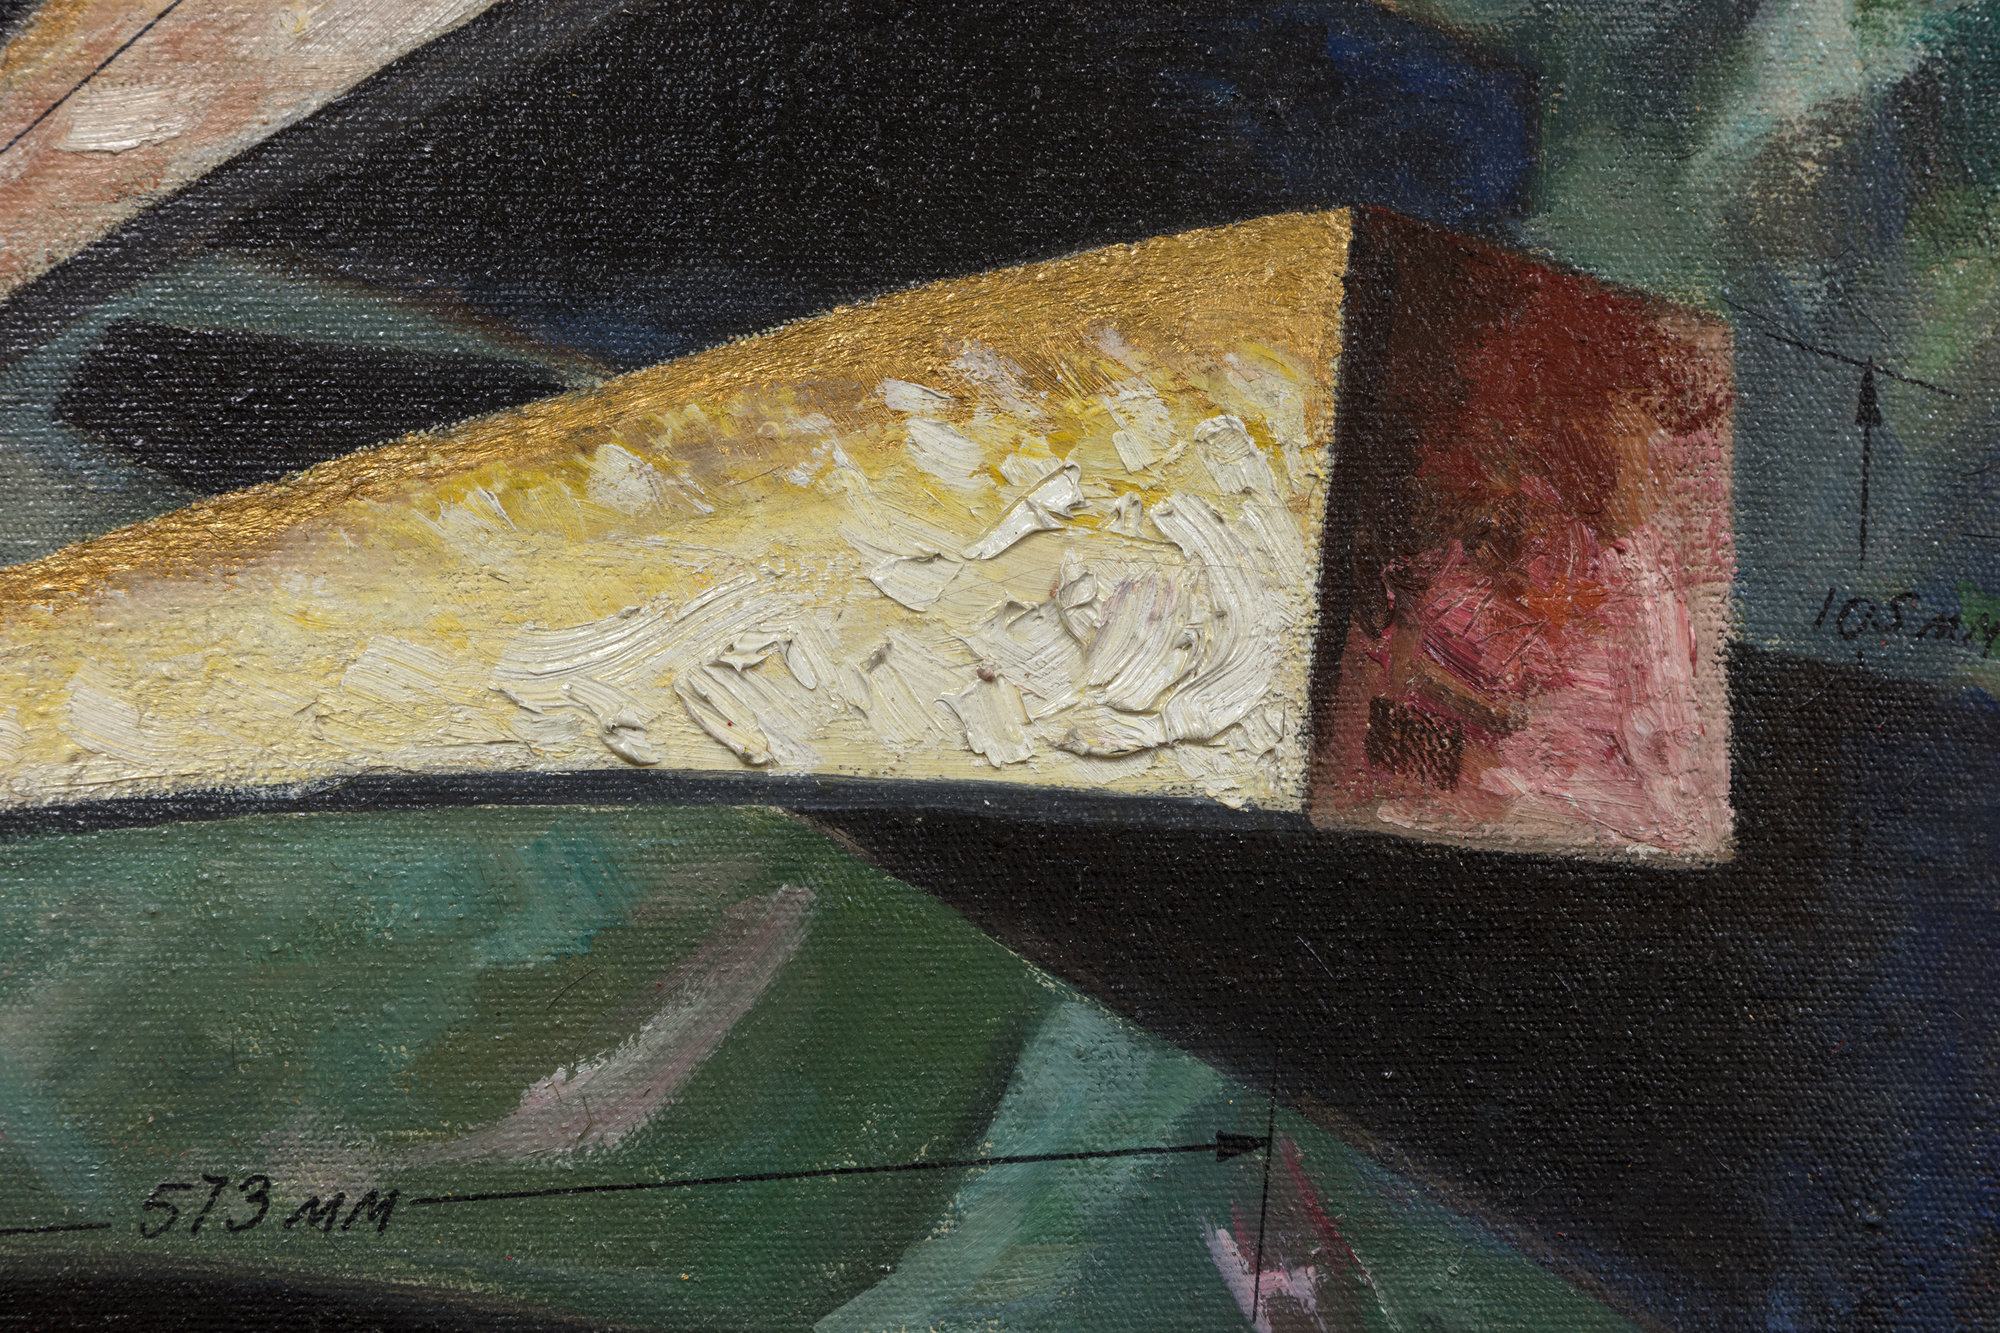 ليونيد لام-قوه الدولة-النفط علي قماش-68 3/8 × 66 × 1 في.